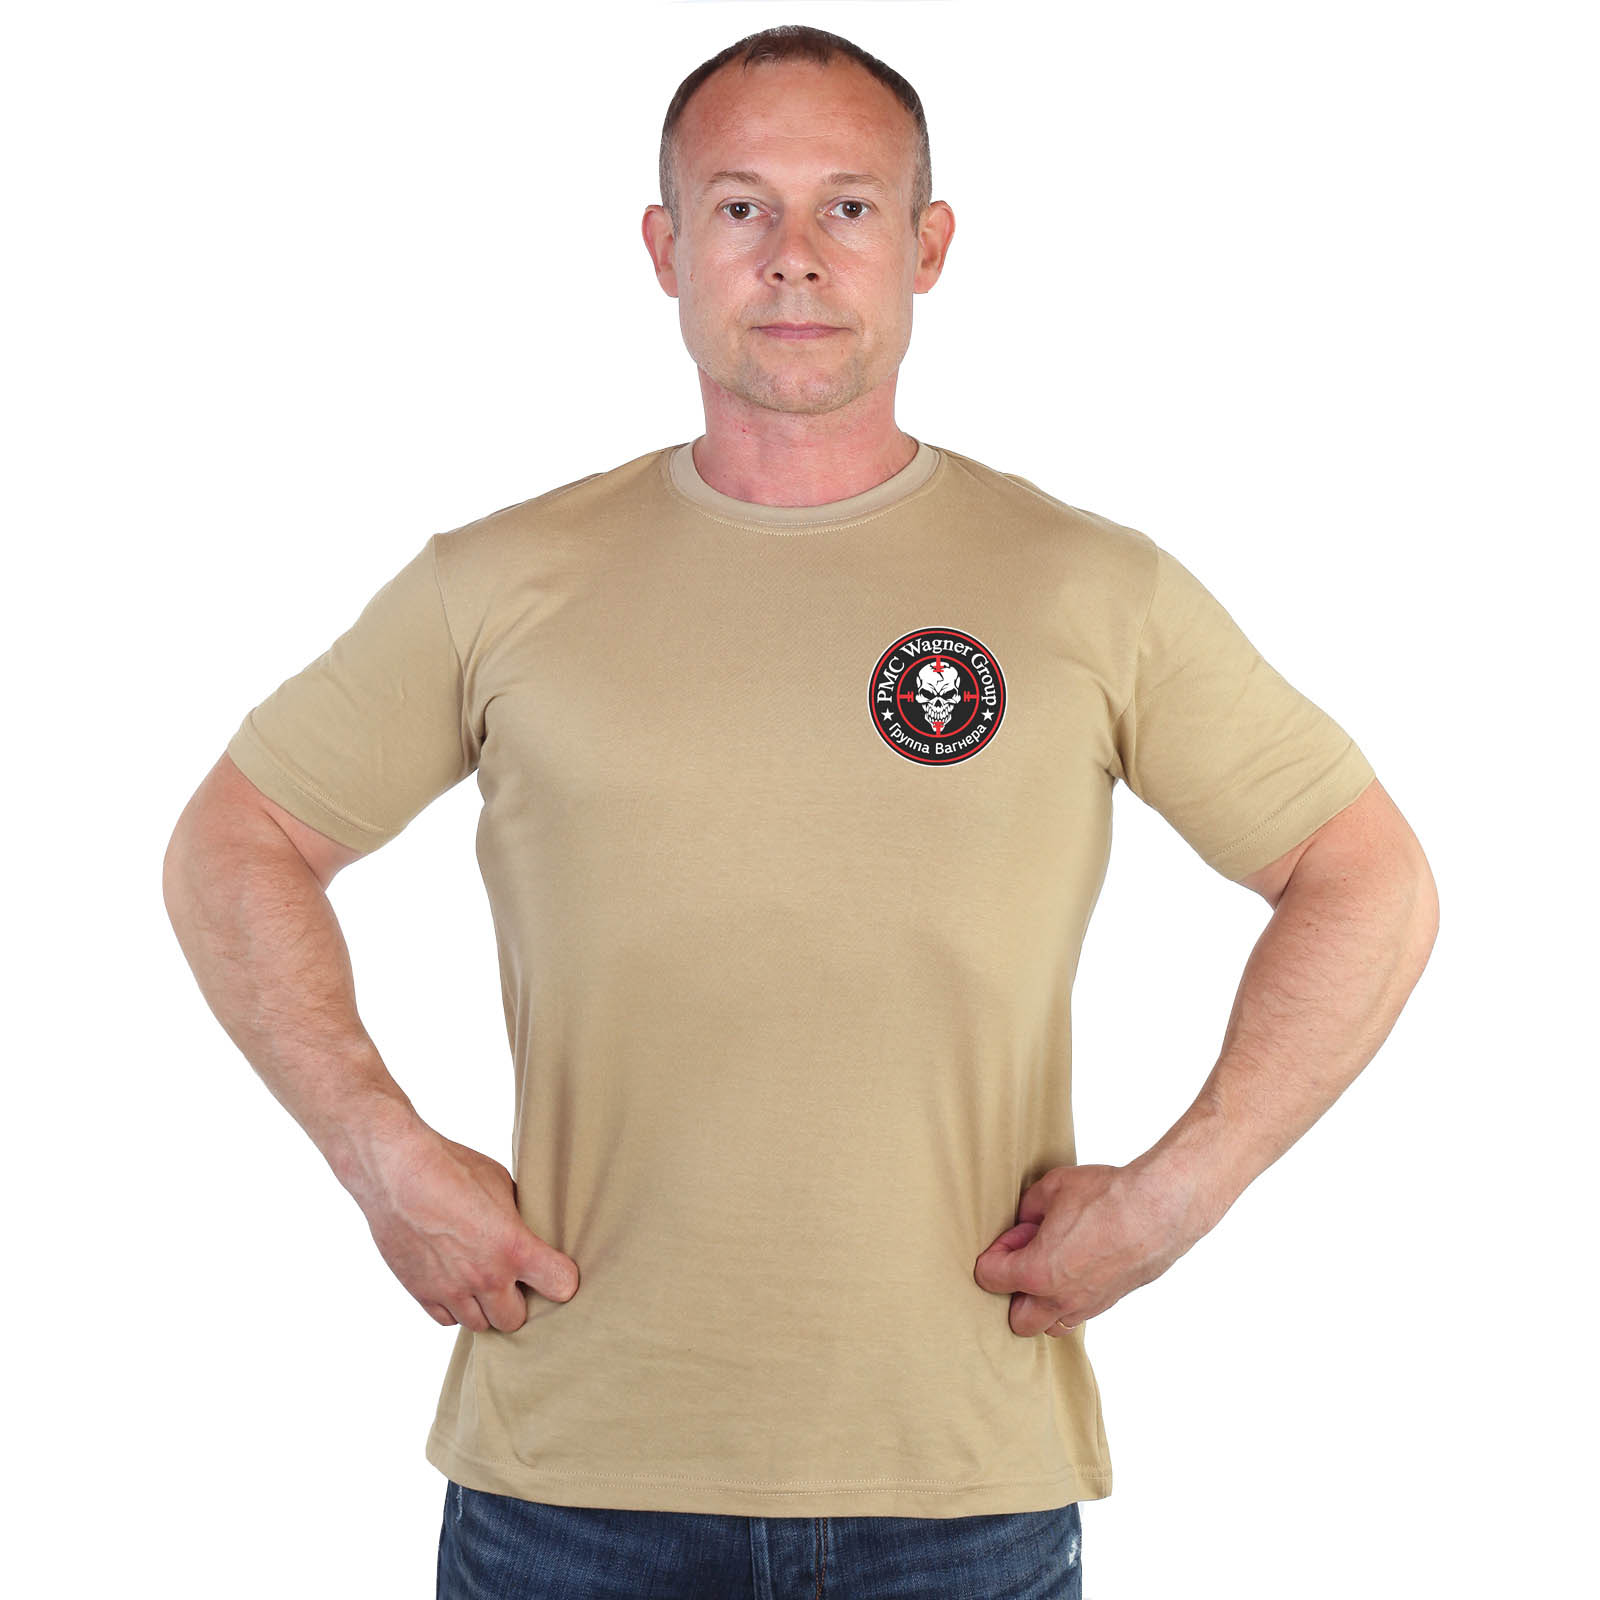 Песочная футболка с термотрансфером "Группа Вагнера"